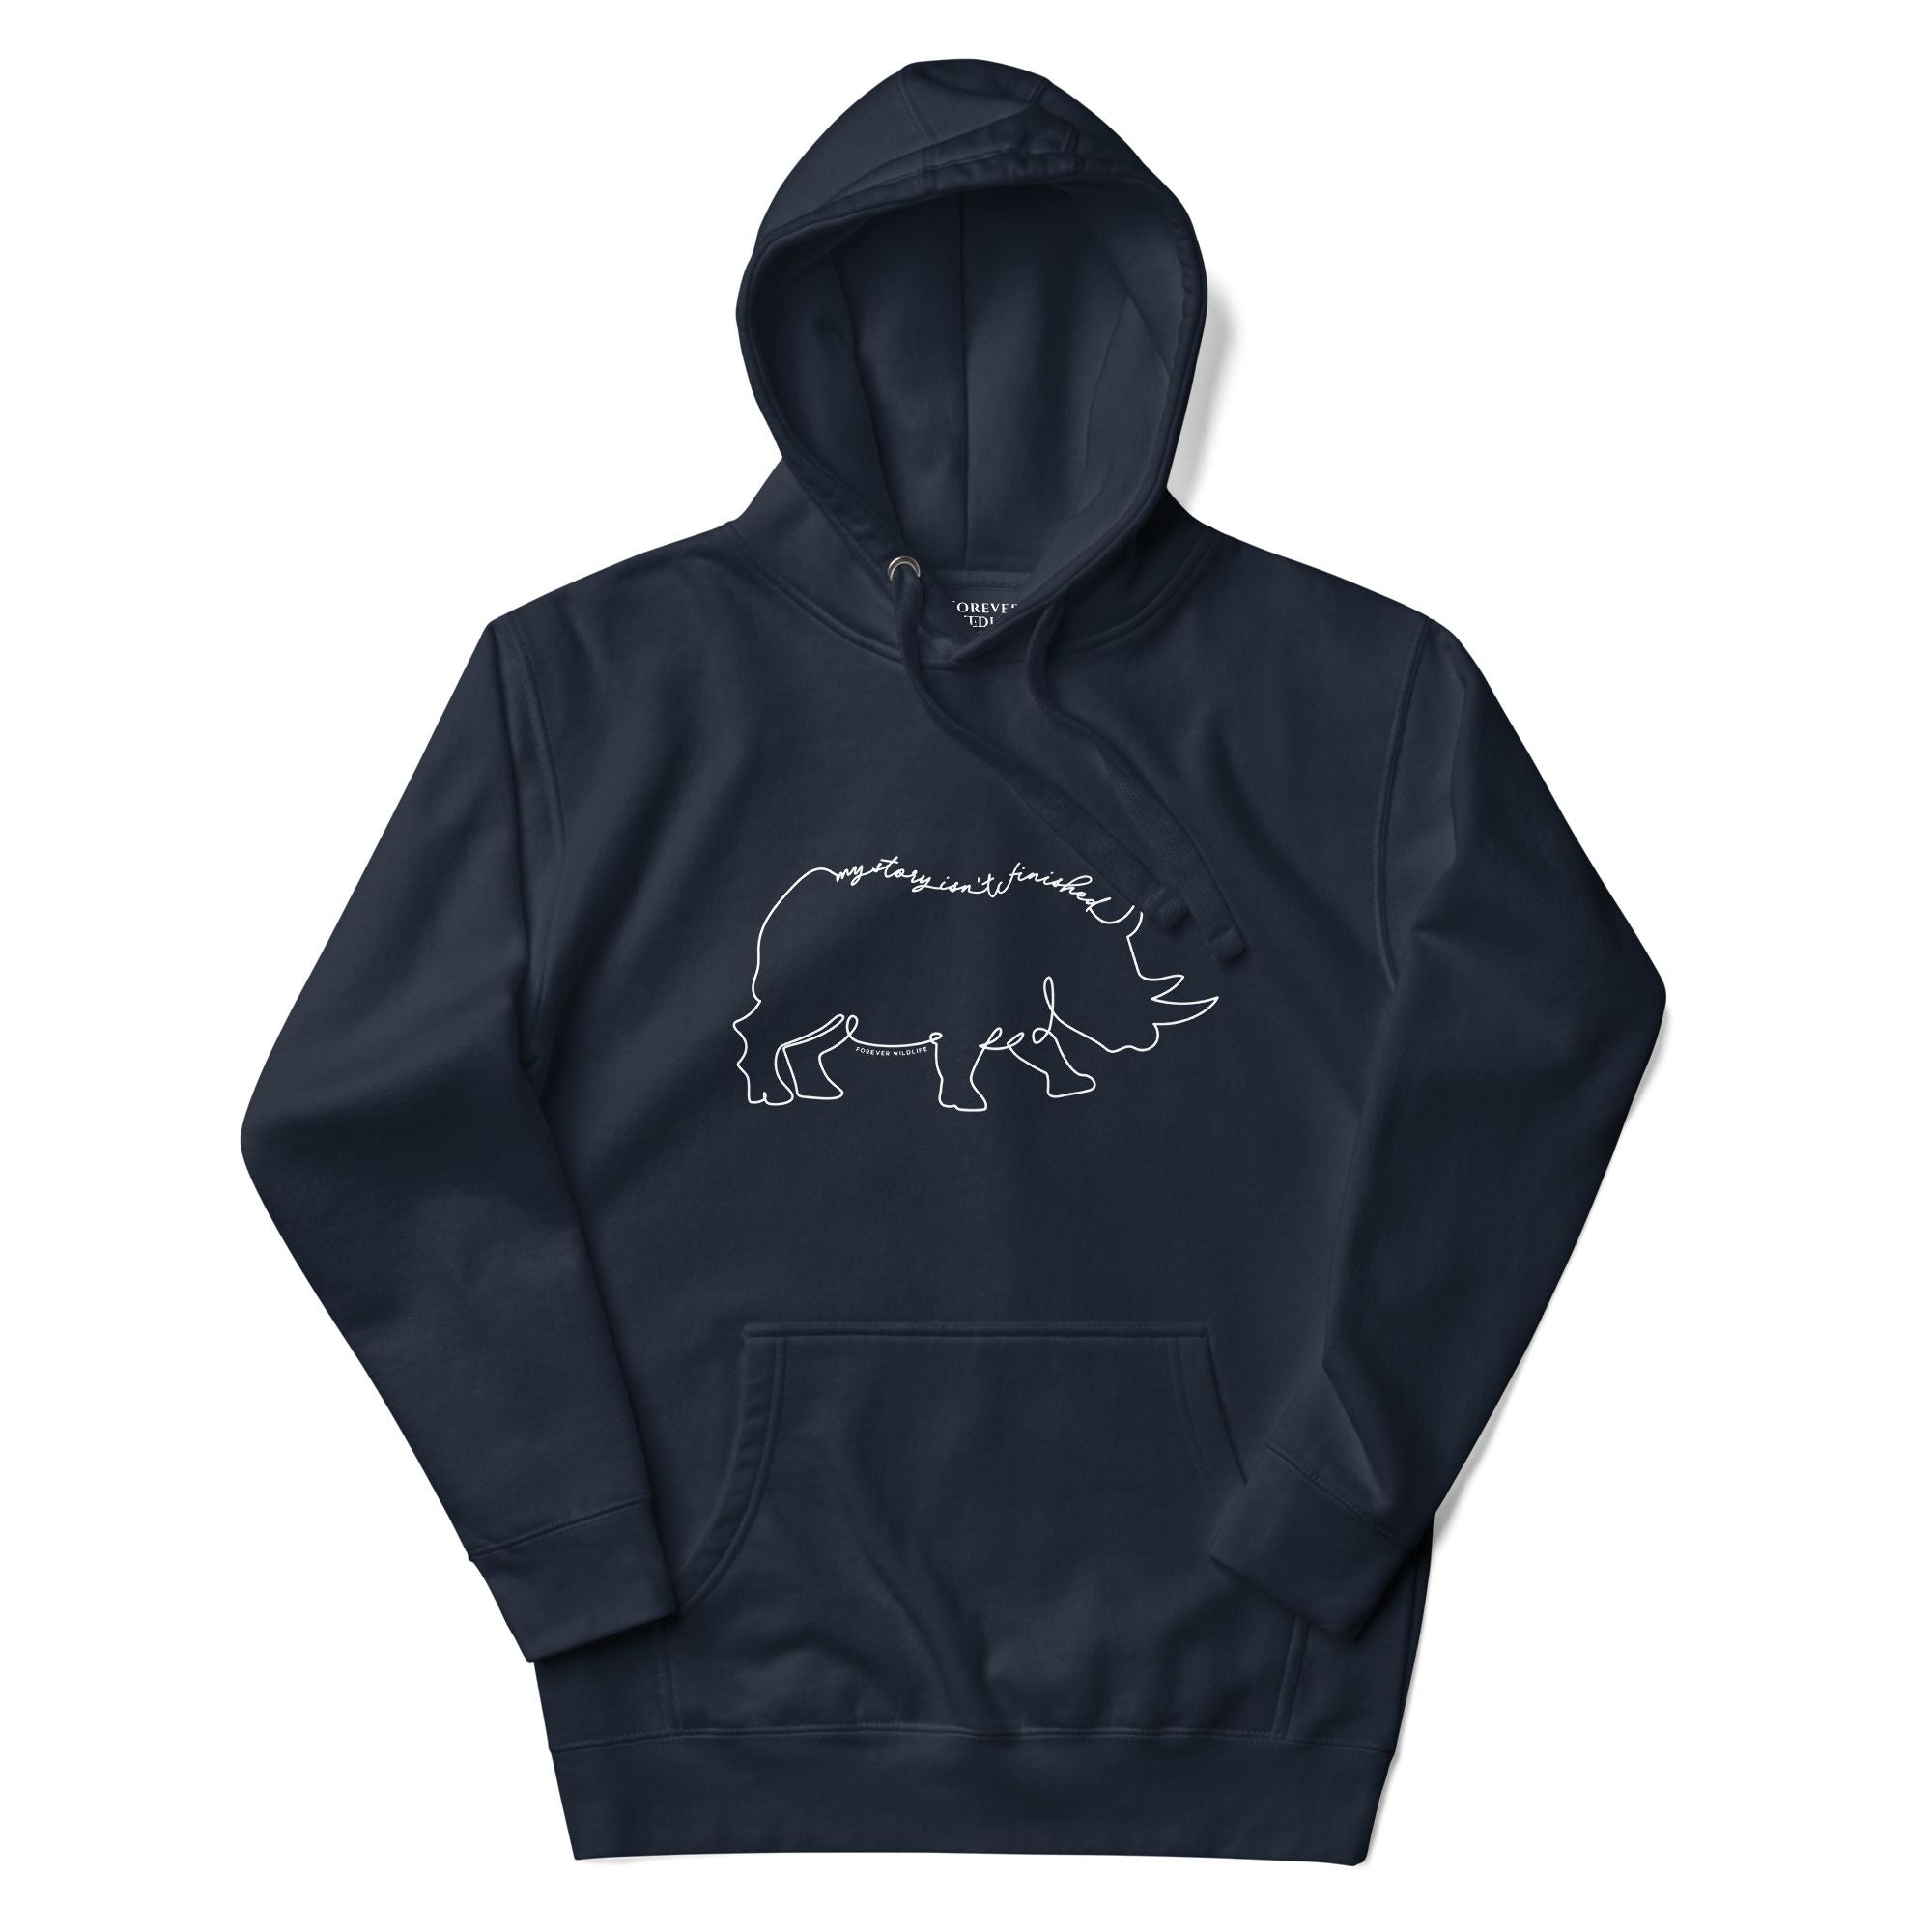 Rhino Hoodie in Navy – Premium Wildlife Animal Inspirational Hoodie Design, part of Wildlife Hoodies & Clothing from Forever Wildlife